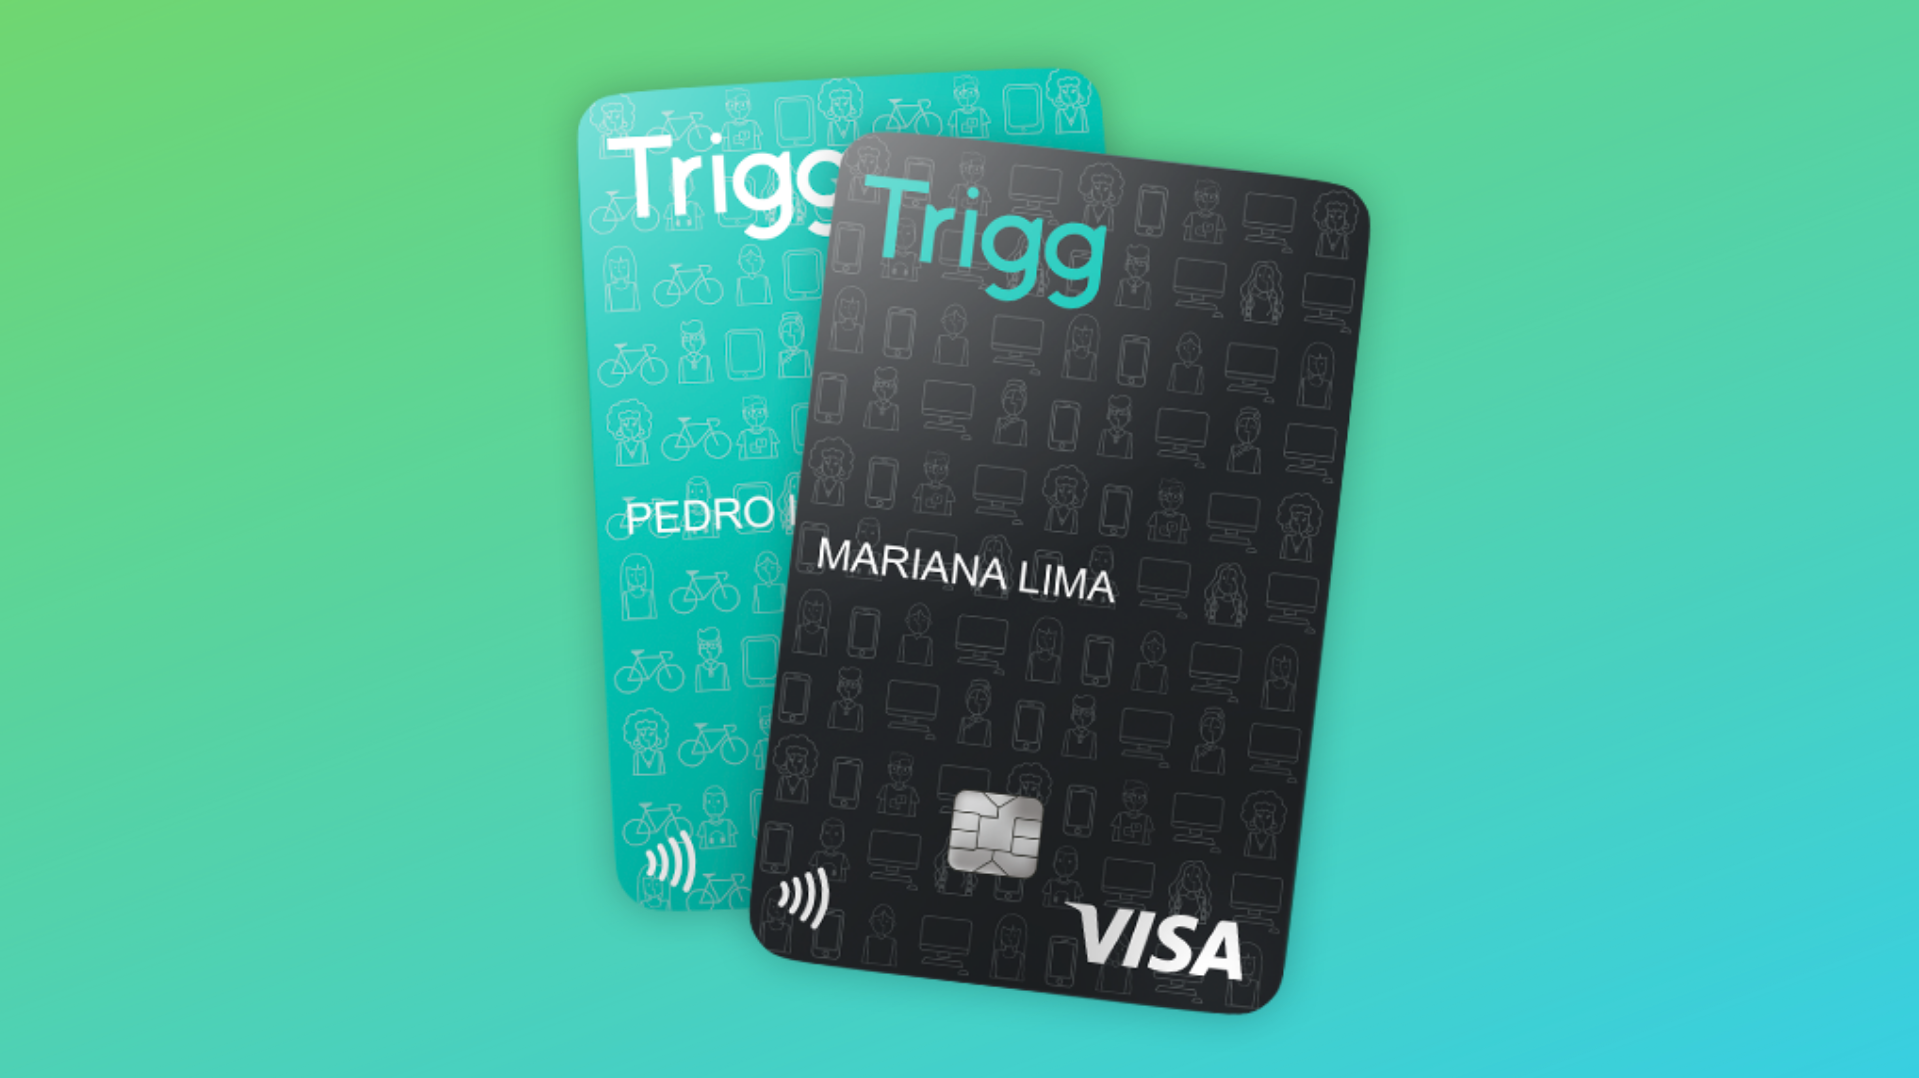 Cartão Trigg agora funciona com Google Pay para pagamentos por aproximação